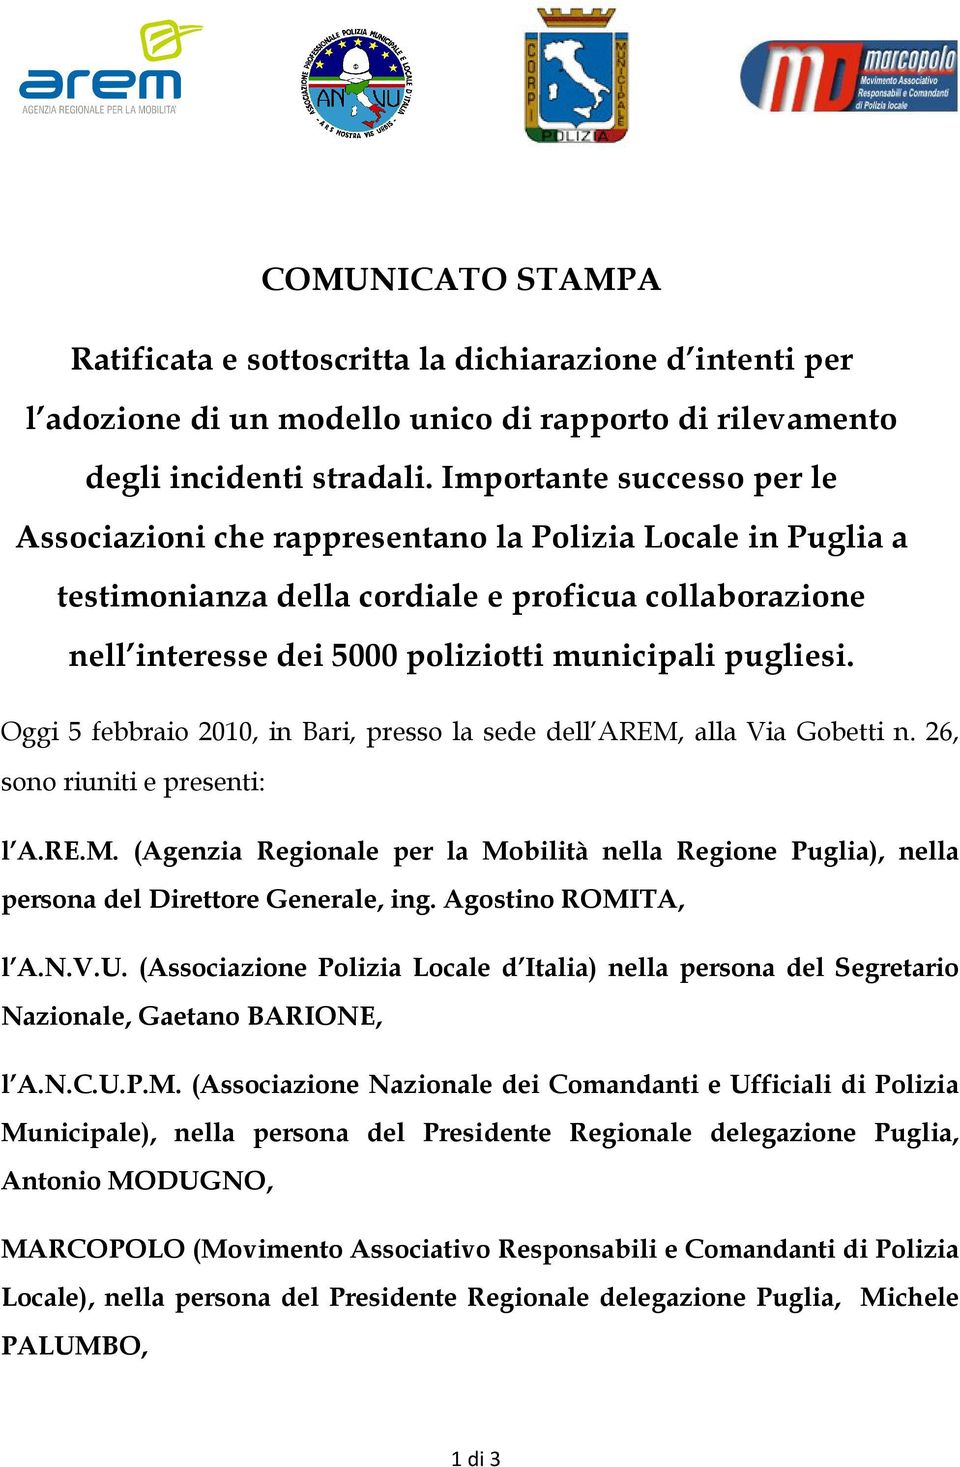 Oggi 5 febbraio 2010, in Bari, presso la sede dell AREM, alla Via Gobetti n. 26, sono riuniti e presenti: l A.RE.M. (Agenzia Regionale per la Mobilità nella Regione Puglia), nella persona del Direttore Generale, ing.